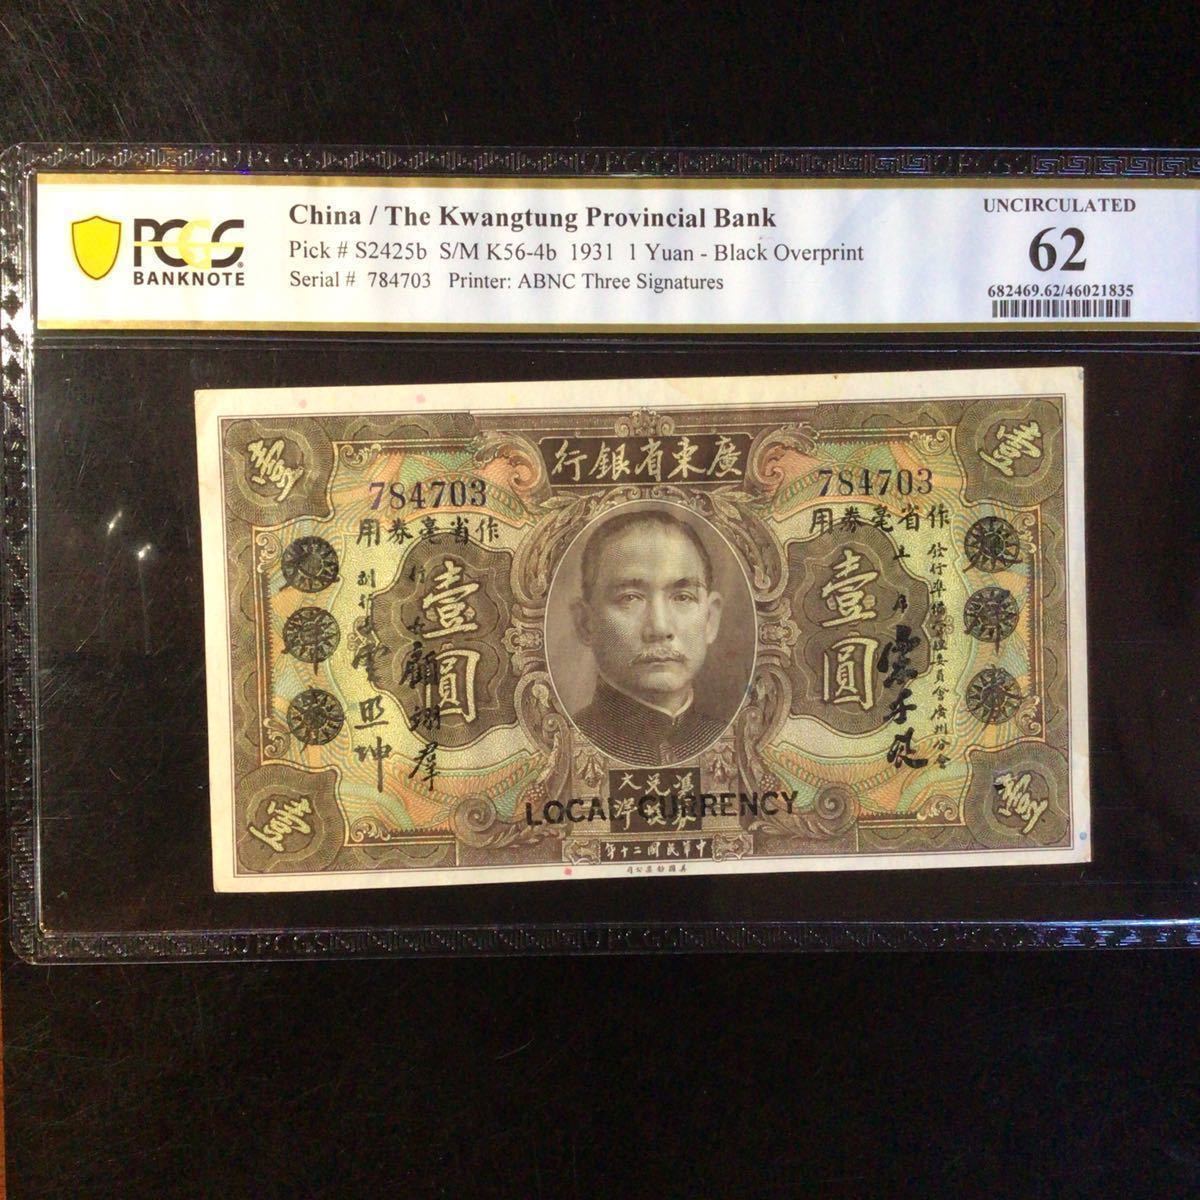 World Banknote Grading CHINA《The Kwangtung Provincial Bank》1 Yuan【1931】『PCGS Grading Uncirculated 62』